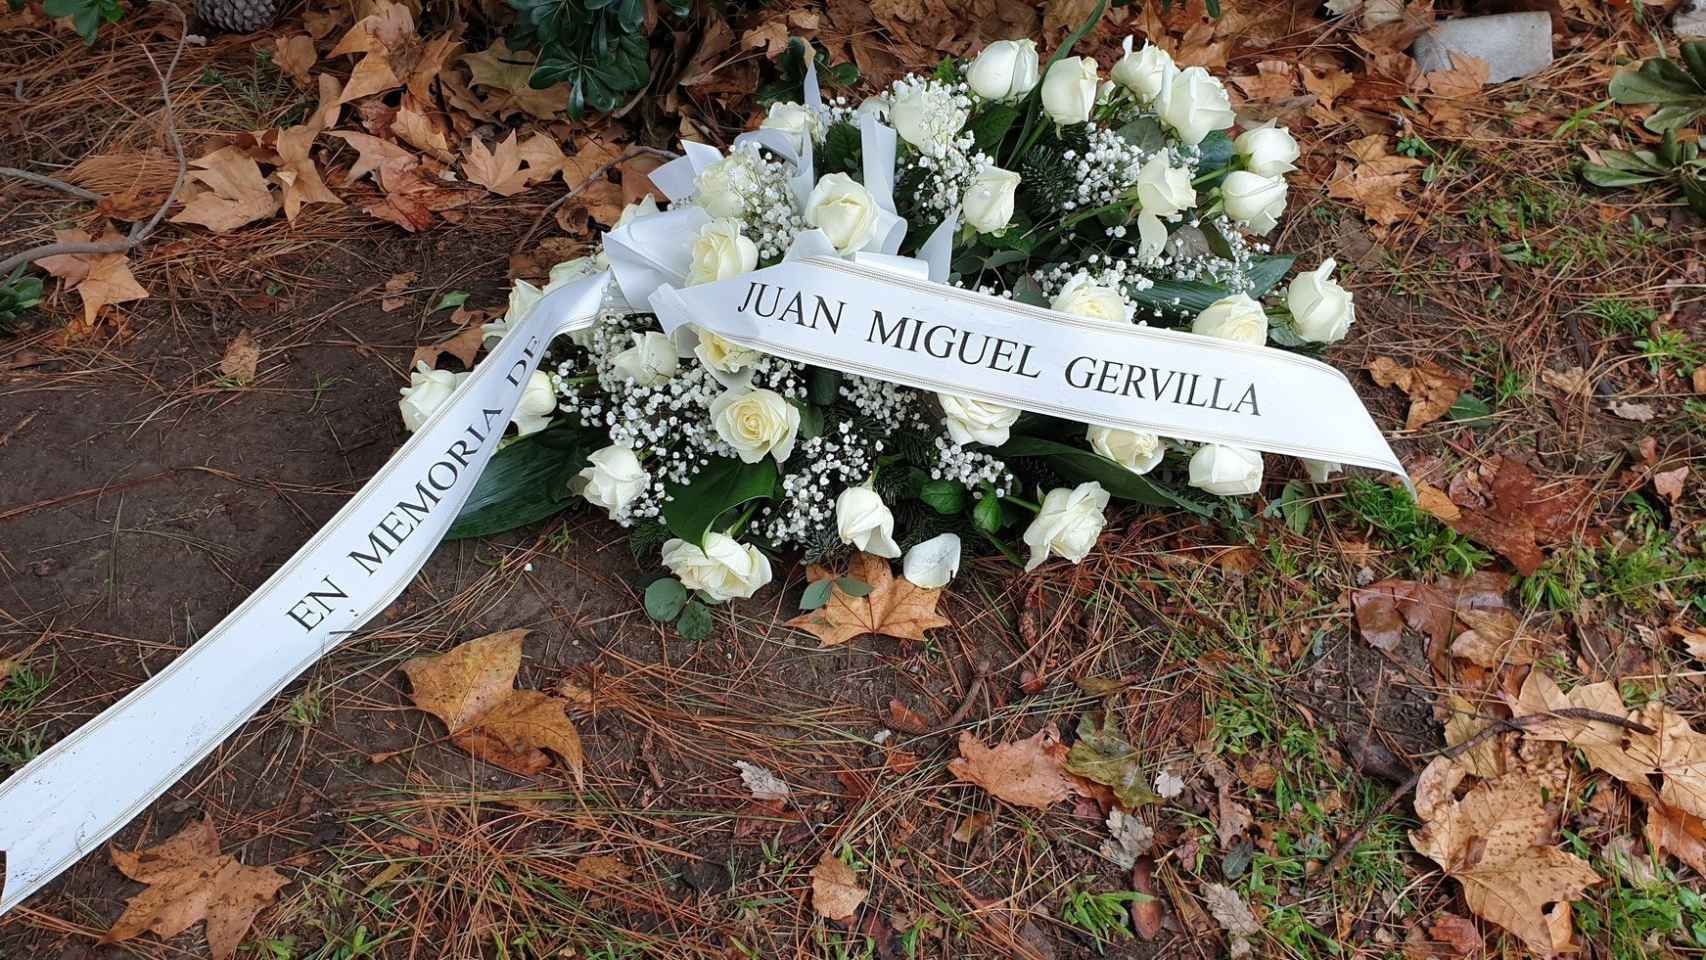 Flores en homenaje al guardia urbano asesinado depositadas en el acto de 2019 / @ReinaSonia